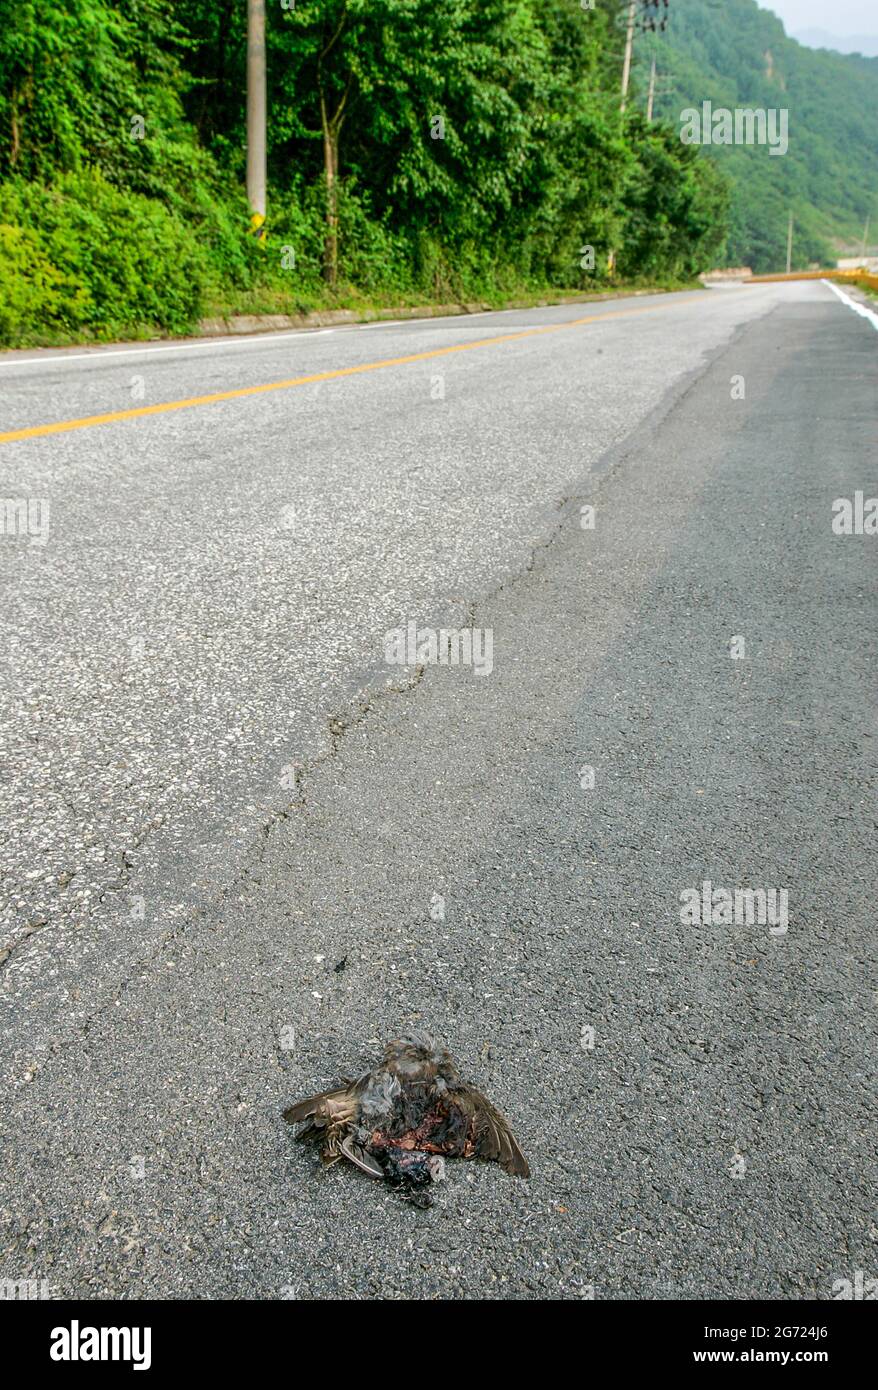 July 10, 2021-Wonju, South Korea-A Dead bird body flatten on the road in Wonju, South Korea. Stock Photo